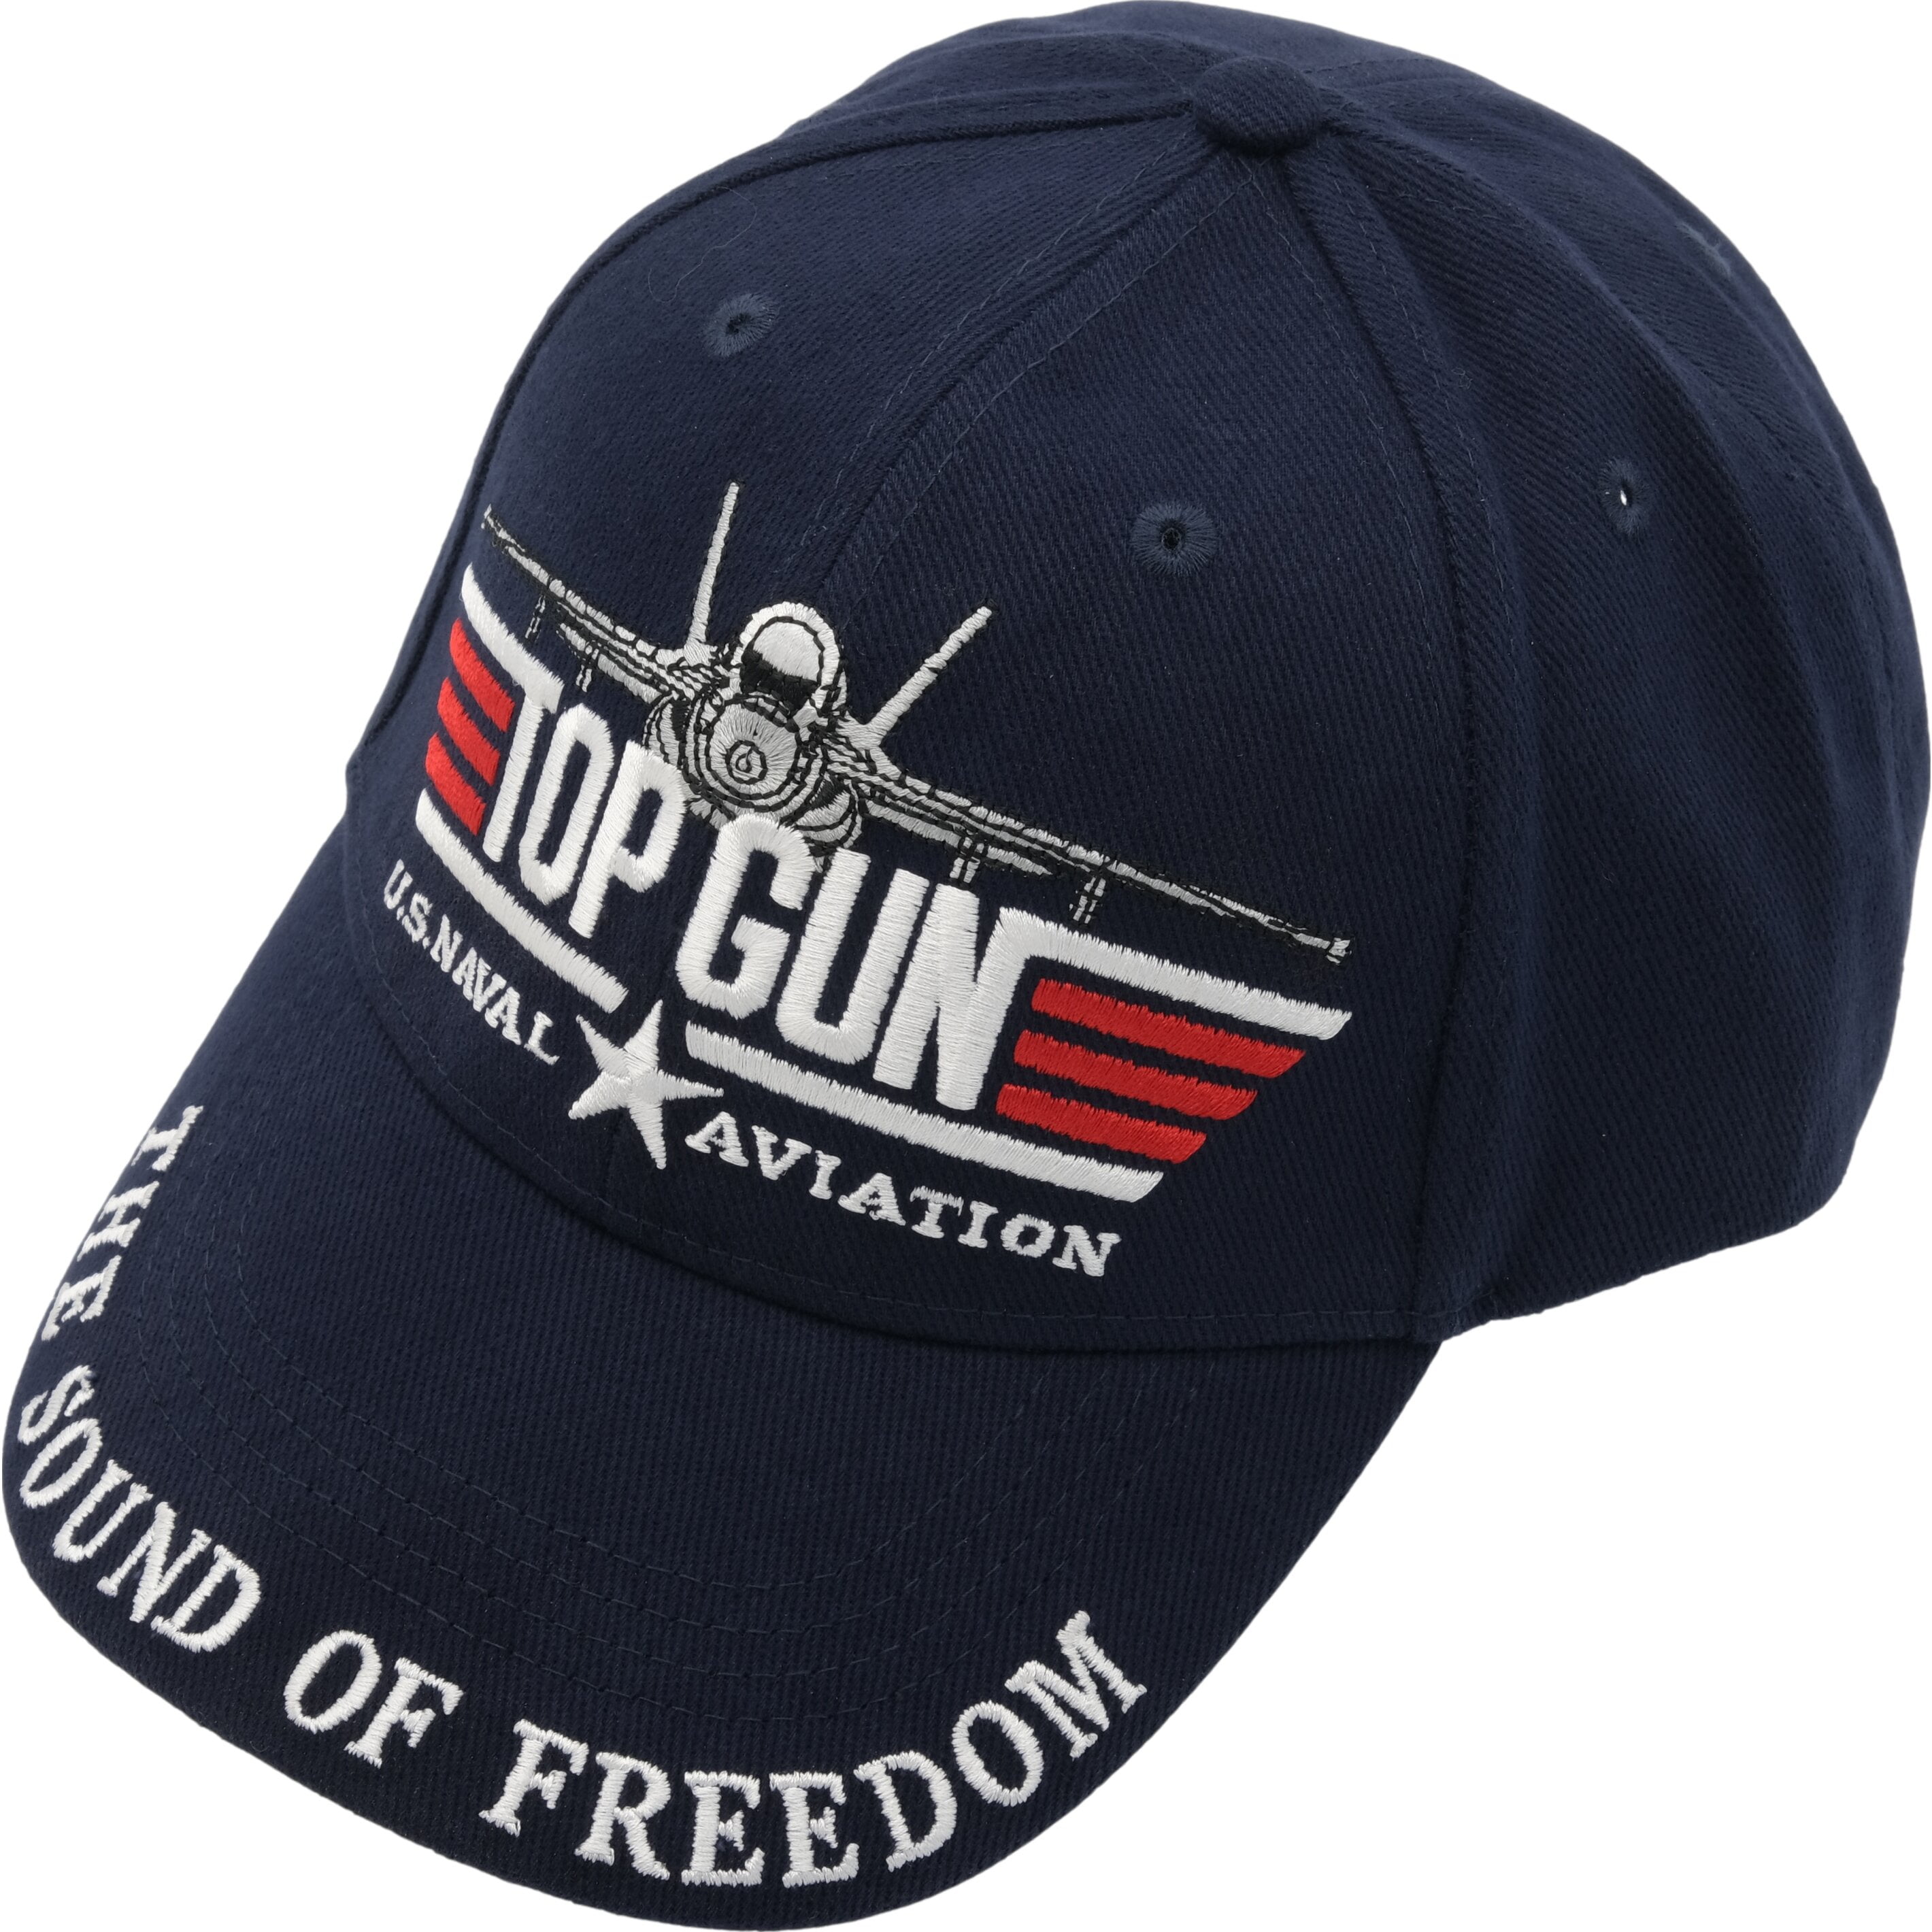 U.S.Navy Aviation Top Gun Hat Cap